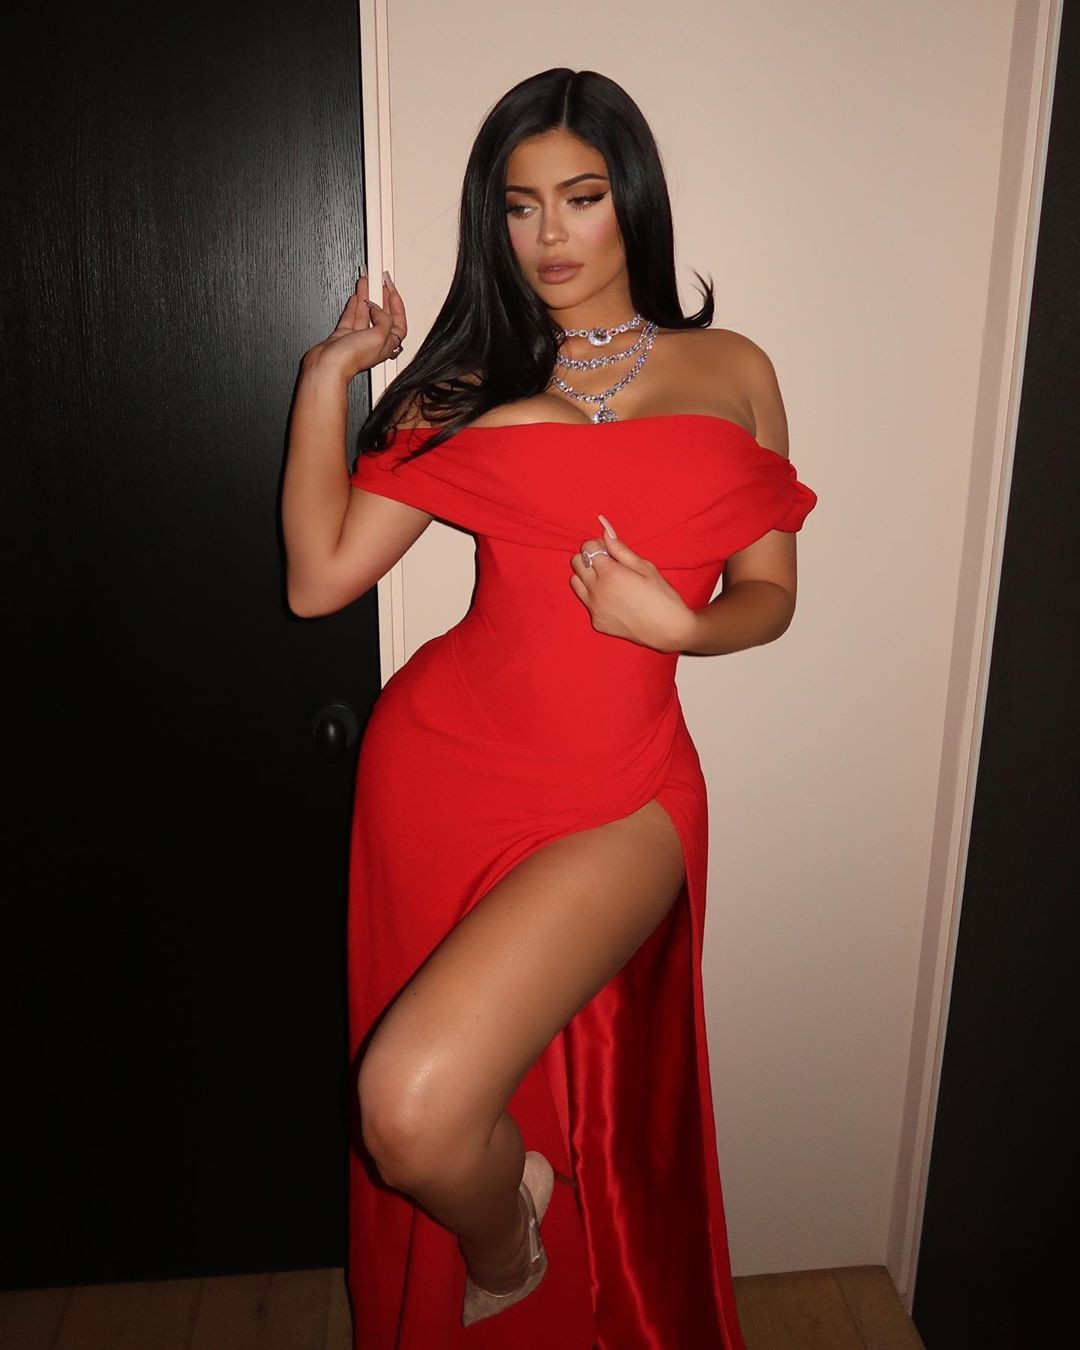 Kylie Jenner'ın kırmızı derin dekolteli elbisesi olay oldu - Sayfa 3